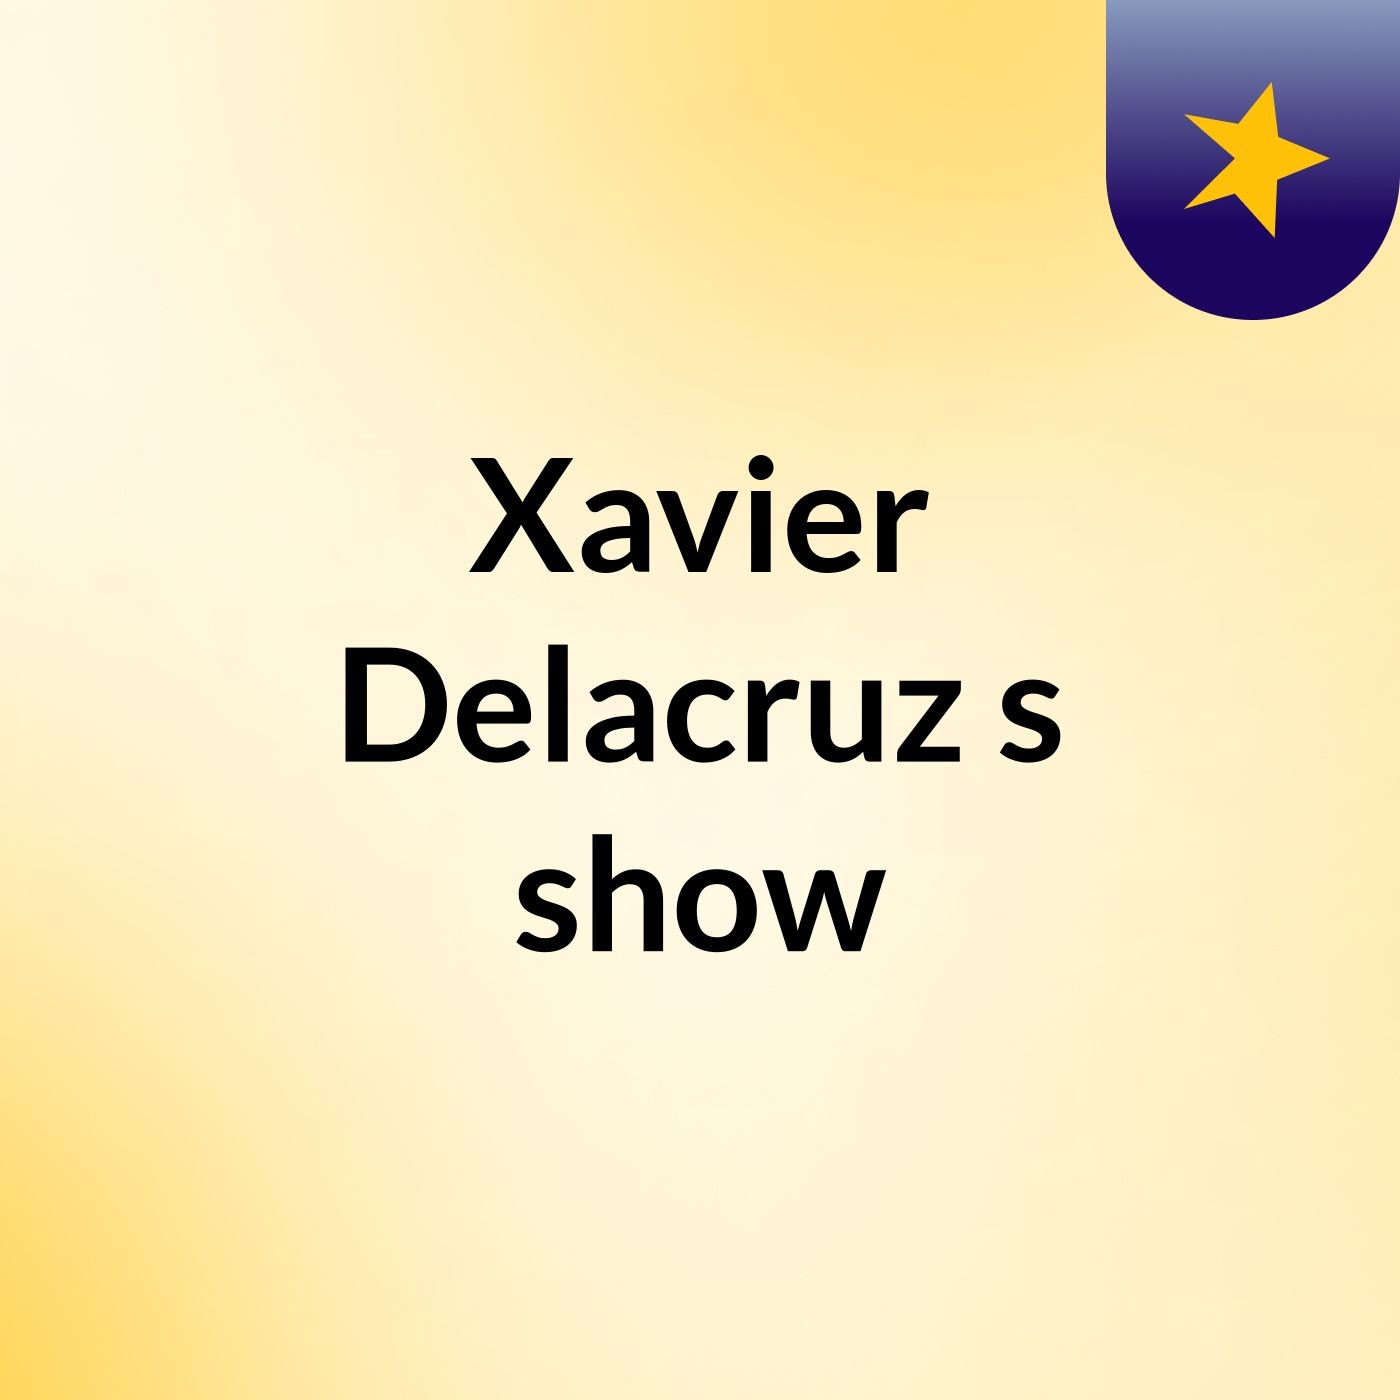 Episode 1 - Xavier Delacruz's show